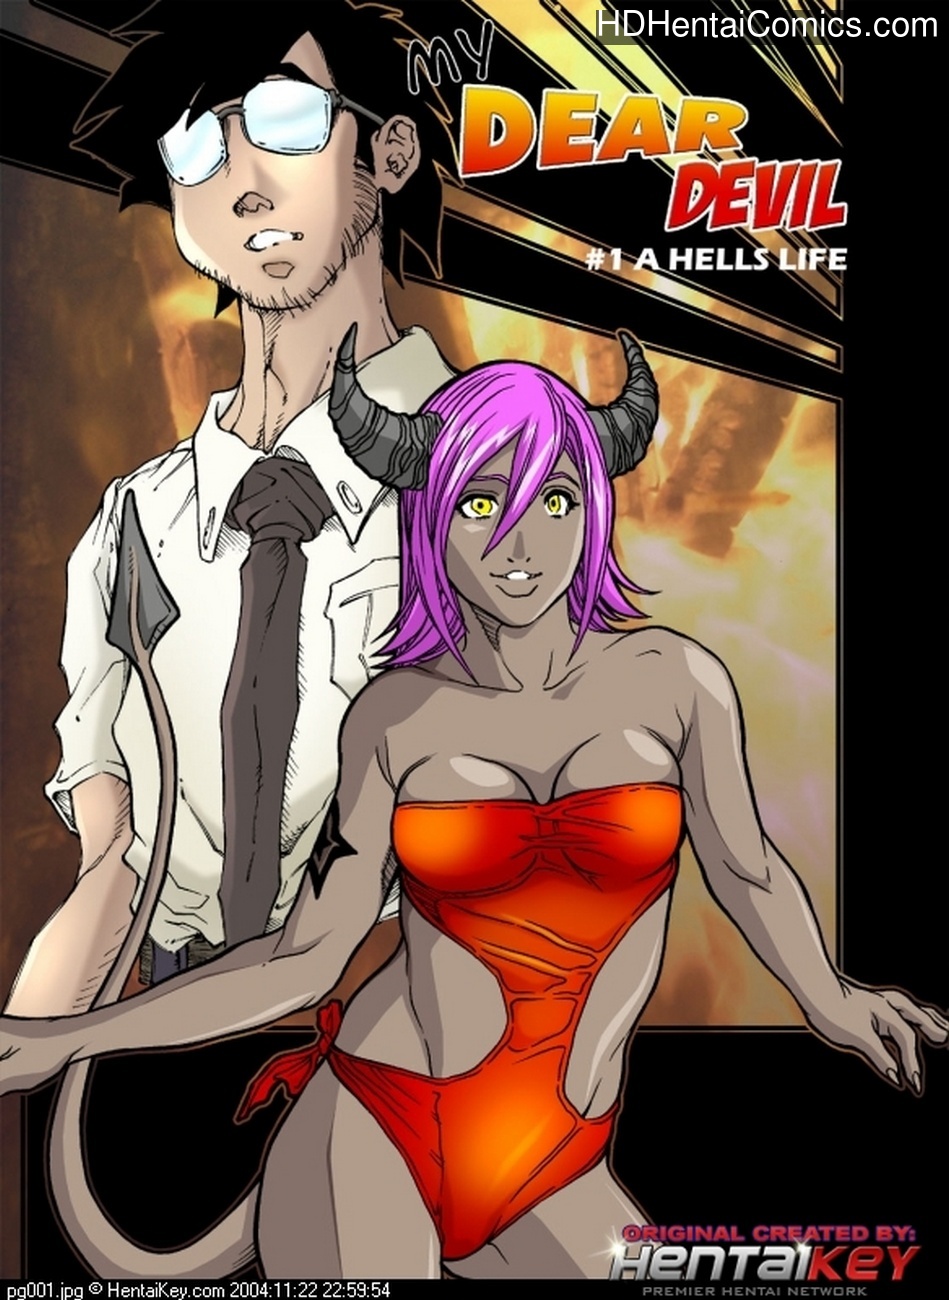 My Dear Devil 1 - A Hells Life hentai comics porn | XXX Comics ...